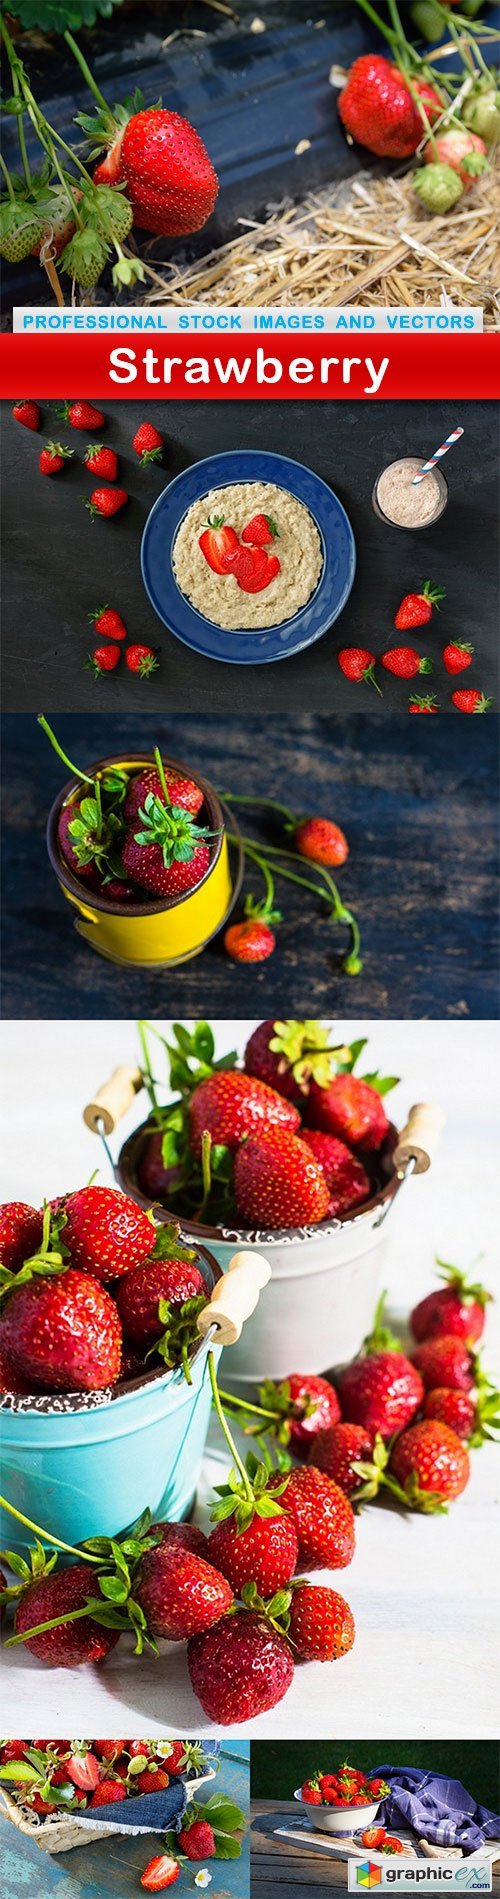 Strawberry - 6 UHQ JPEG